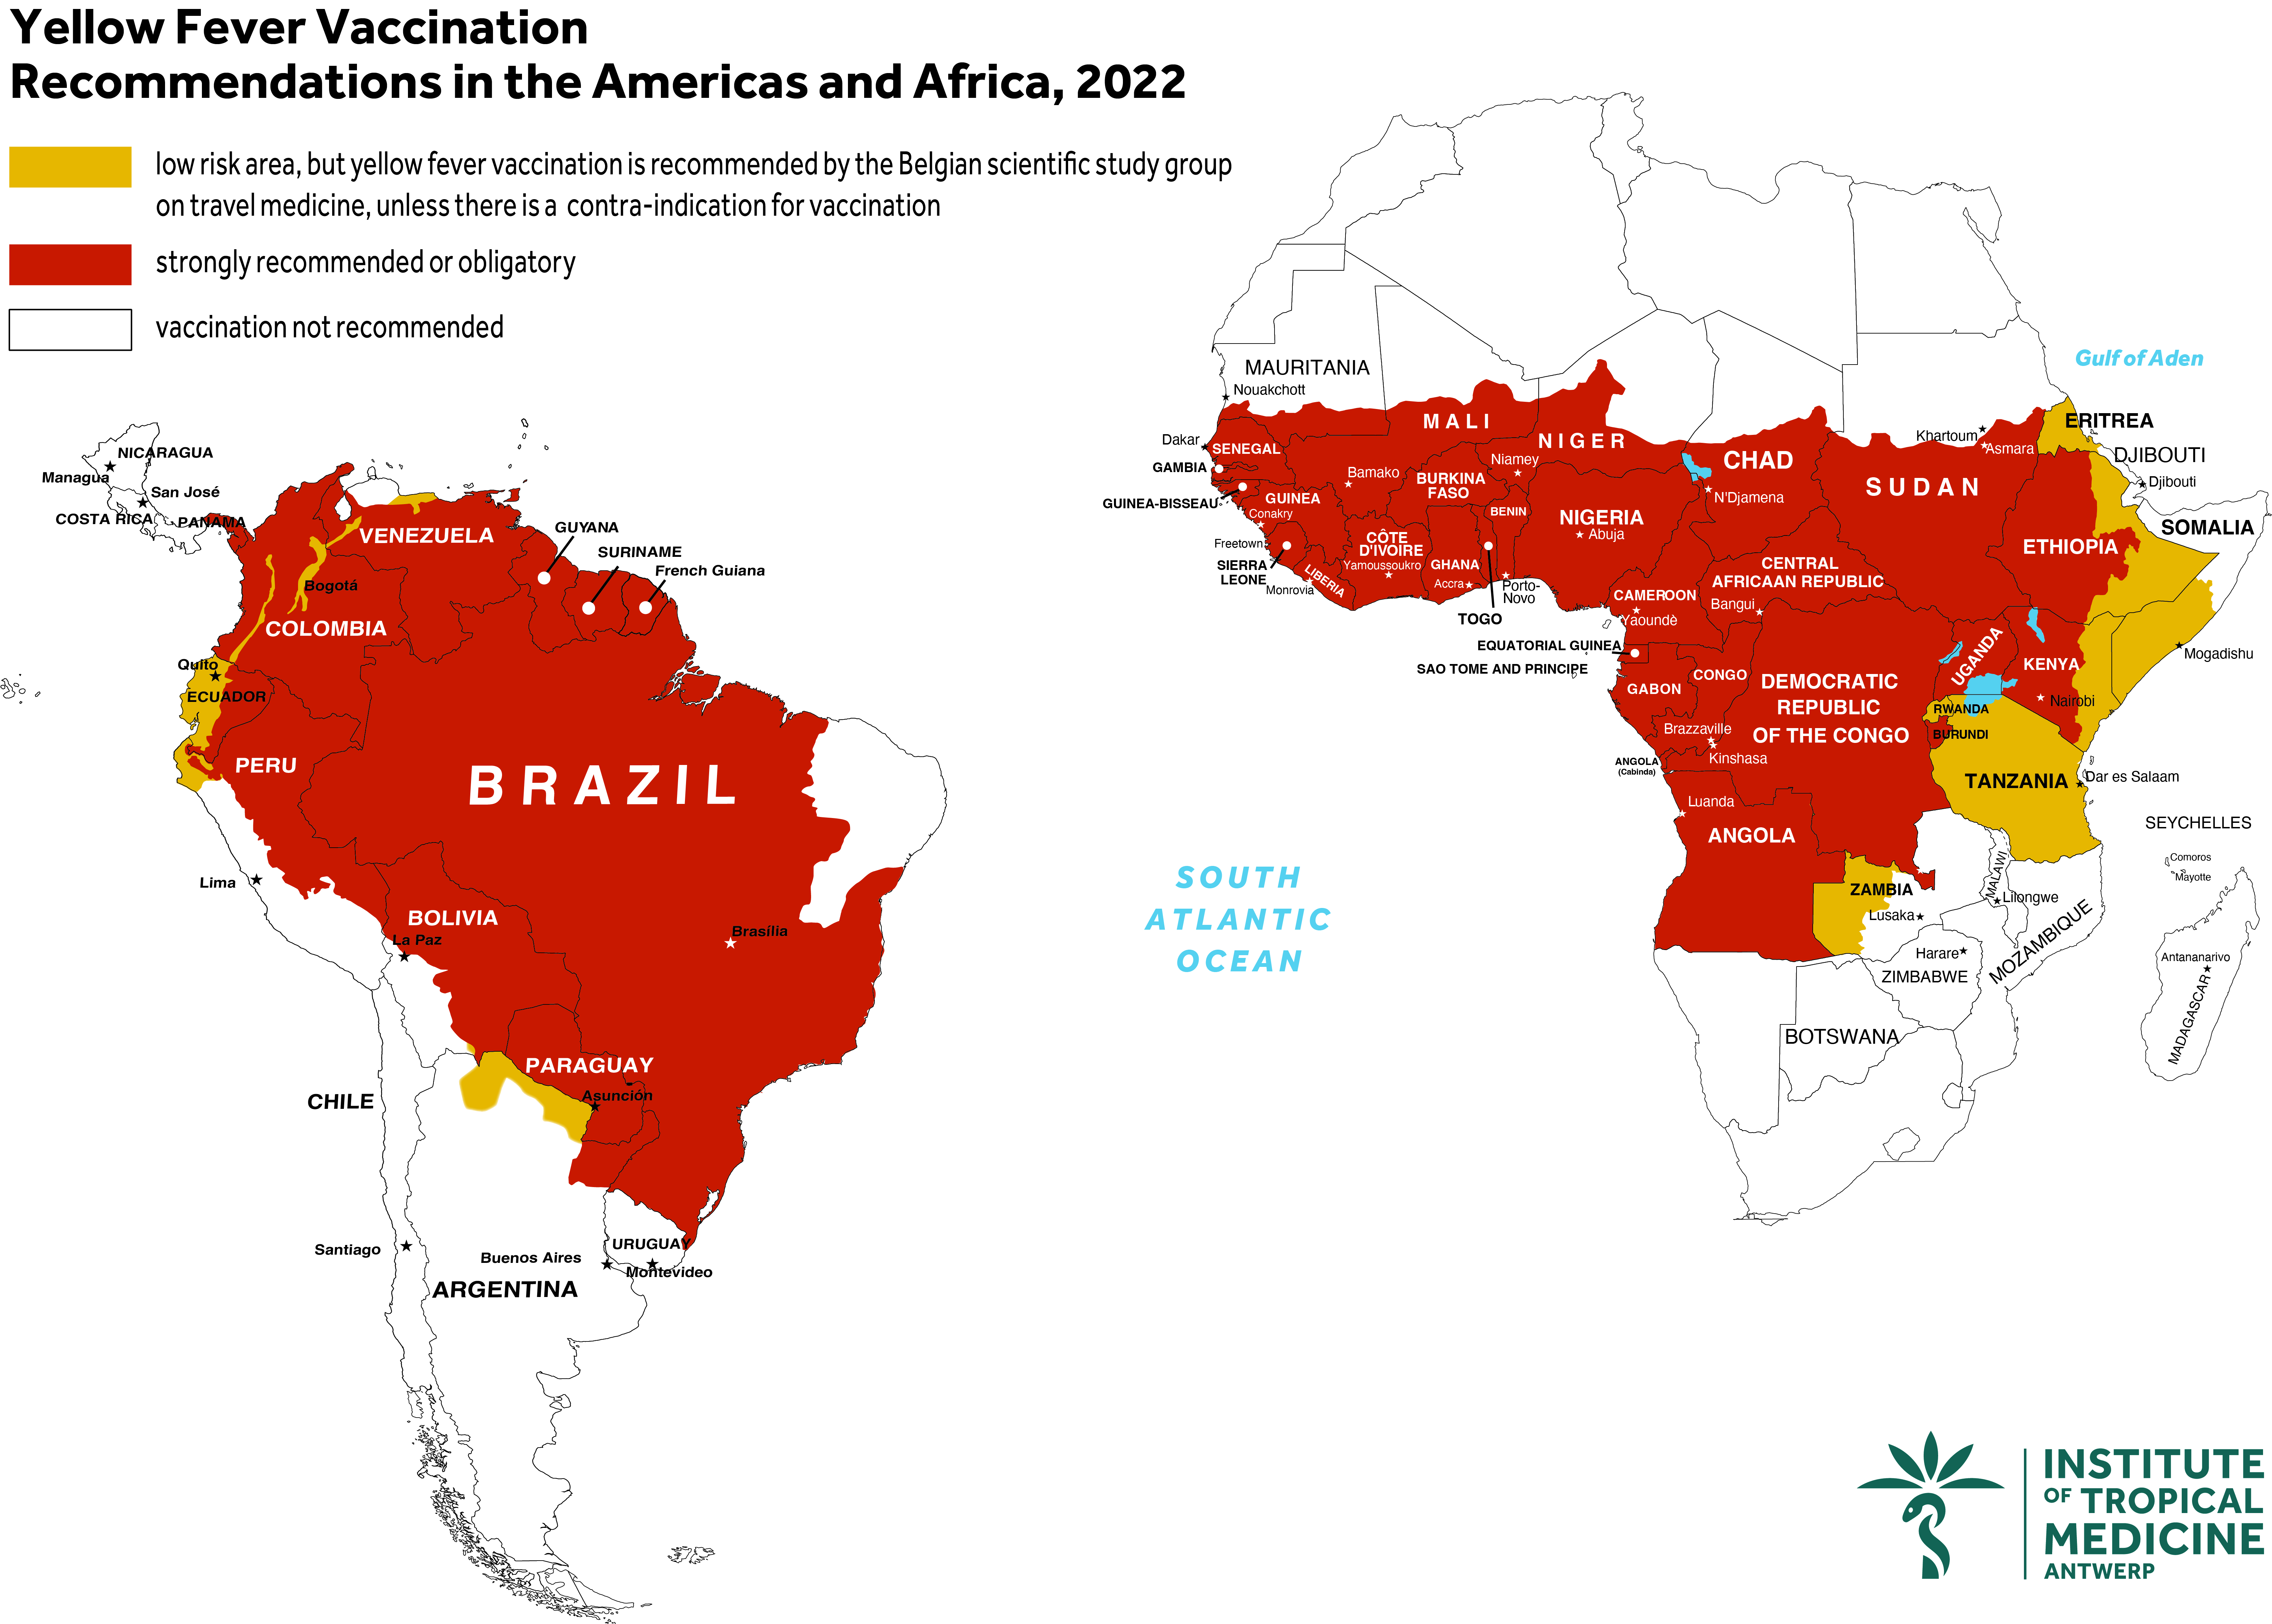 Carte des zones à risque de fièvre jaune : carte de l'Amérique latine et de l'Afrique, dans laquelle les zones à risque de fièvre jaune sont colorées en rouge ou en orange.